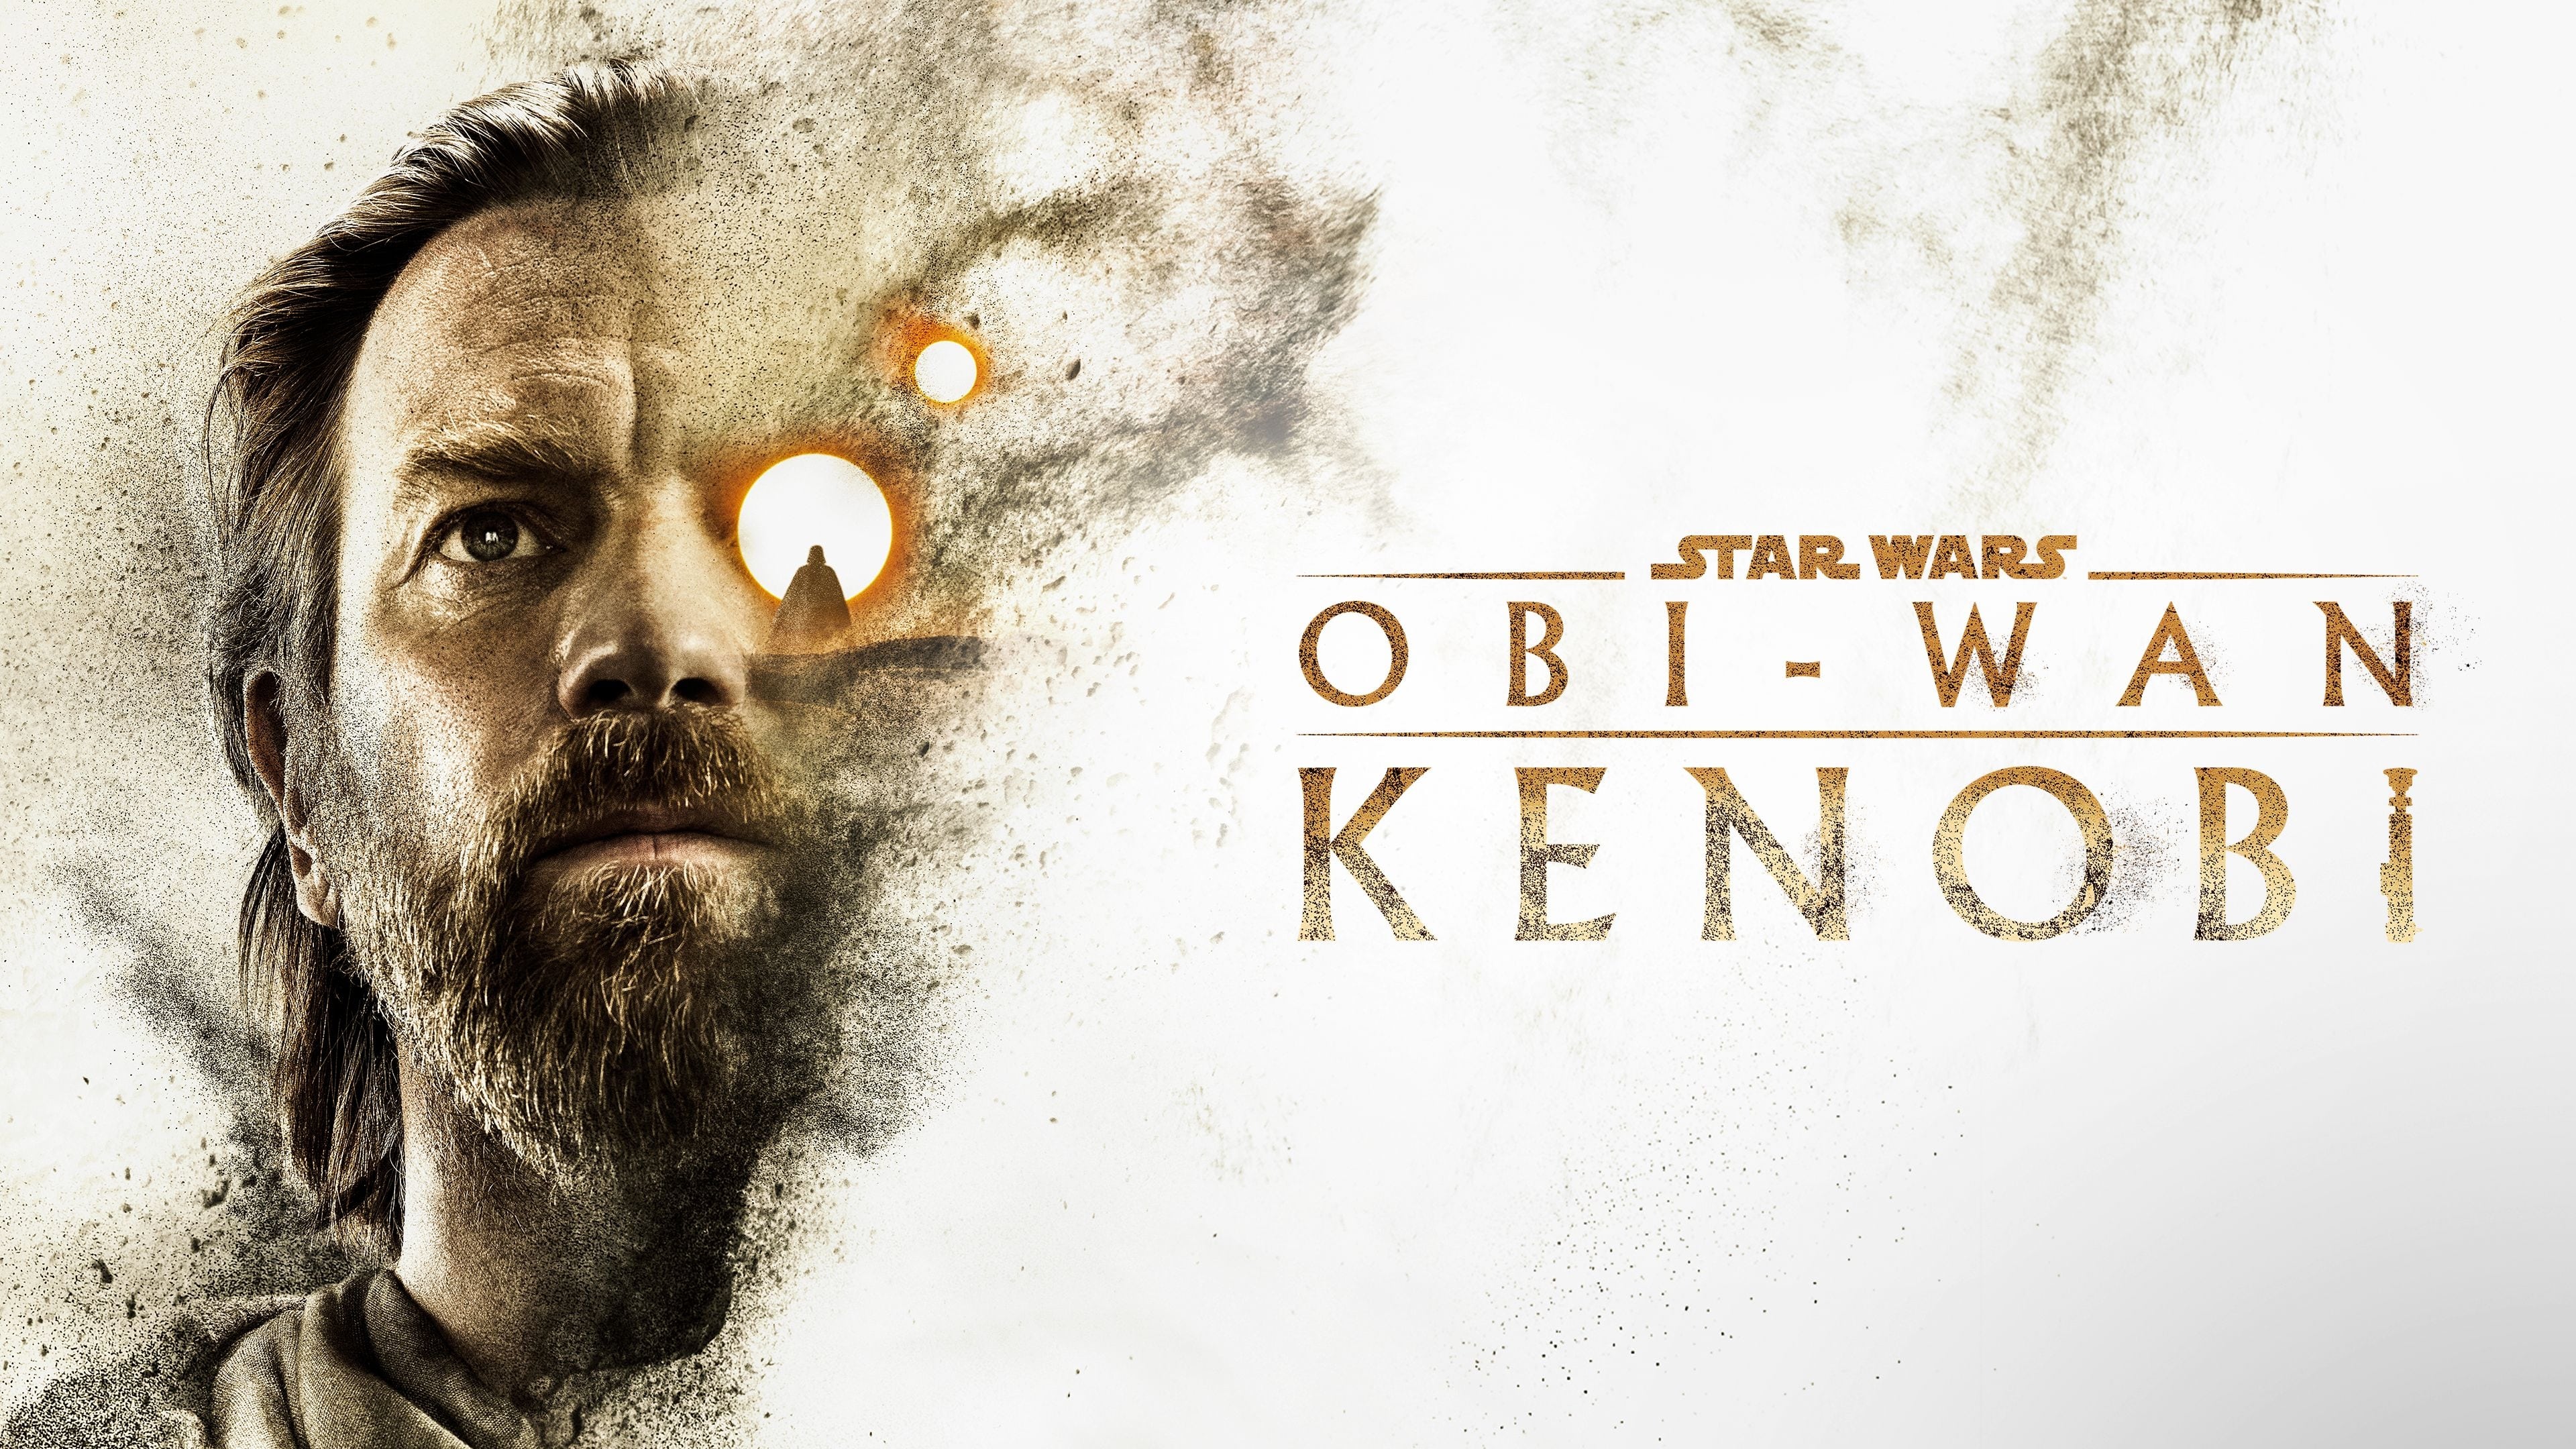 Obi-Wan Kenobi - Season 1 Episode 6